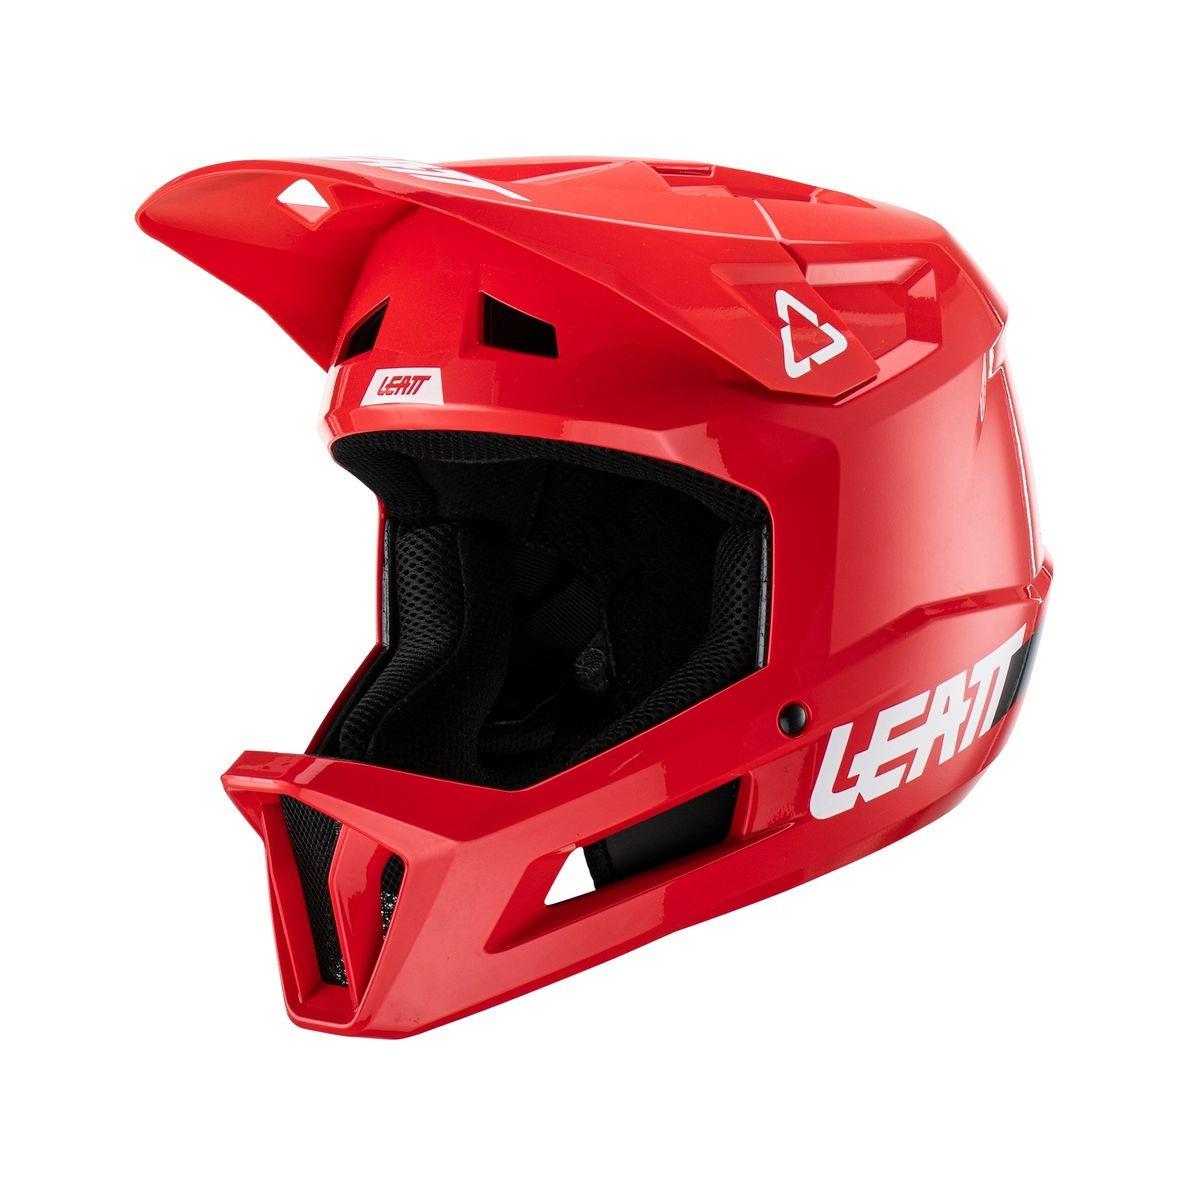 Gravity 1.0 MTB Fullface Helmet Red Size XS (53-54cm)